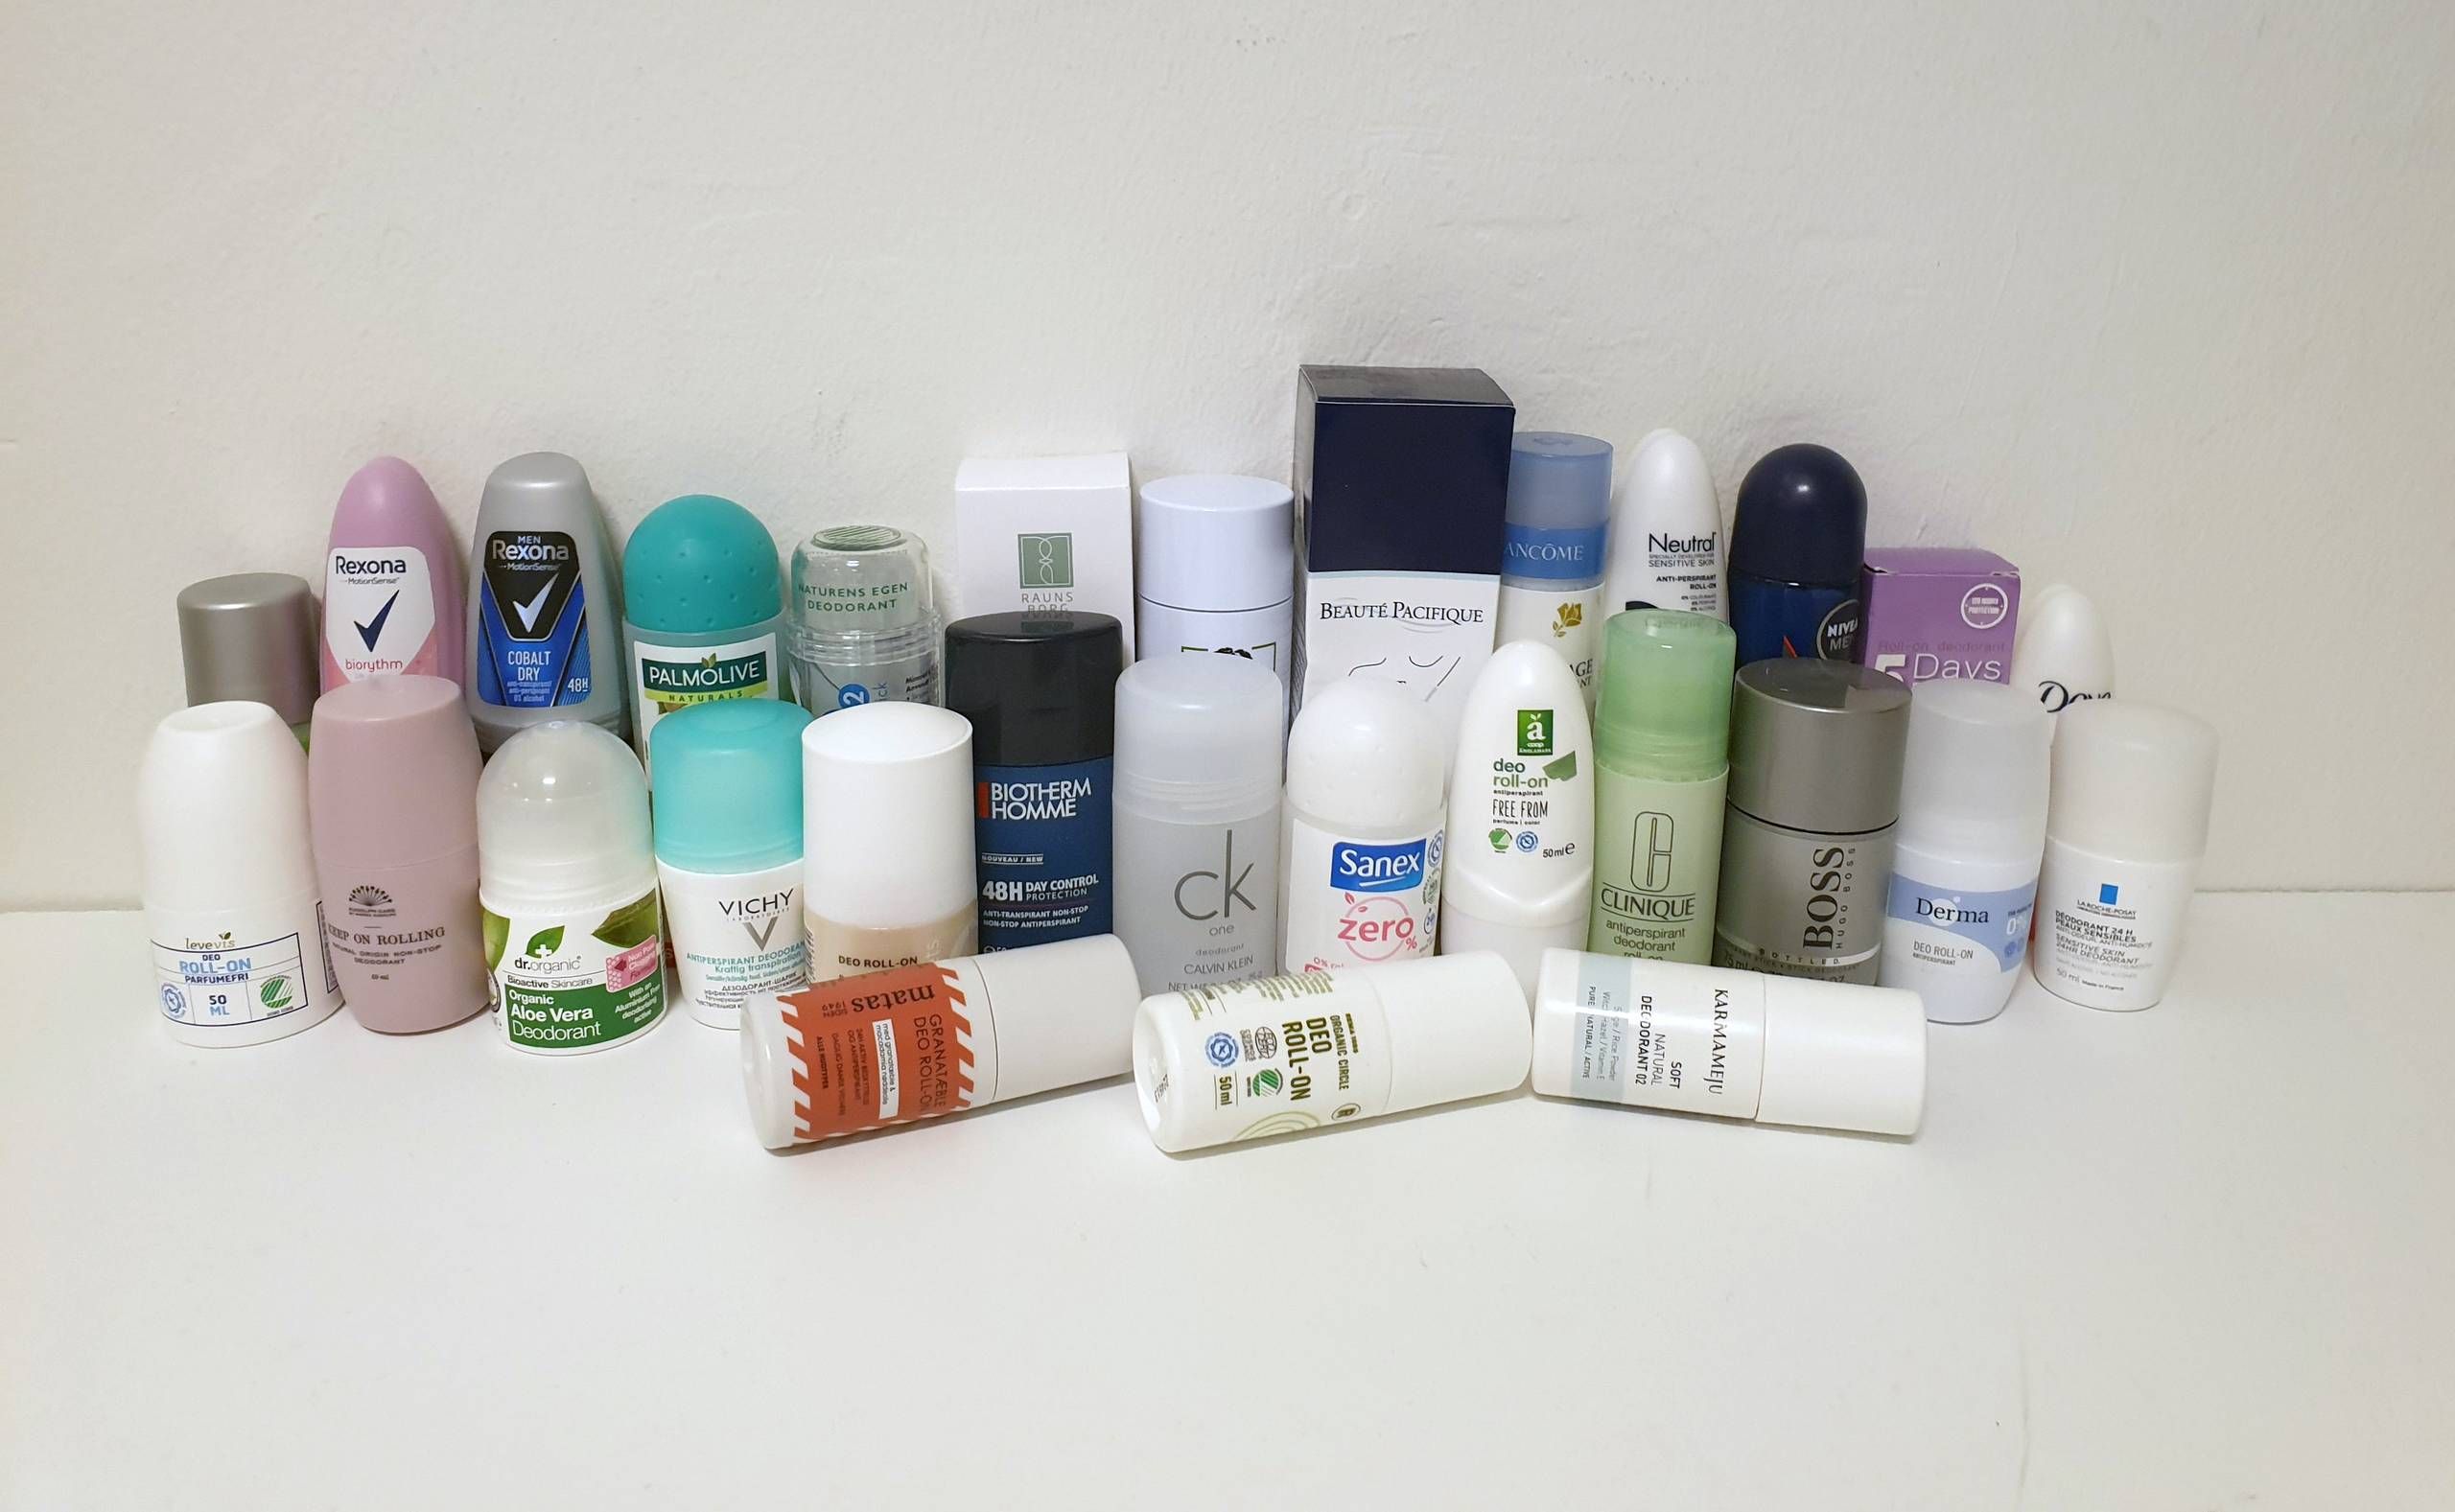 61 deodoranter under lup: Mange er gode, en del indeholder problematisk kemi